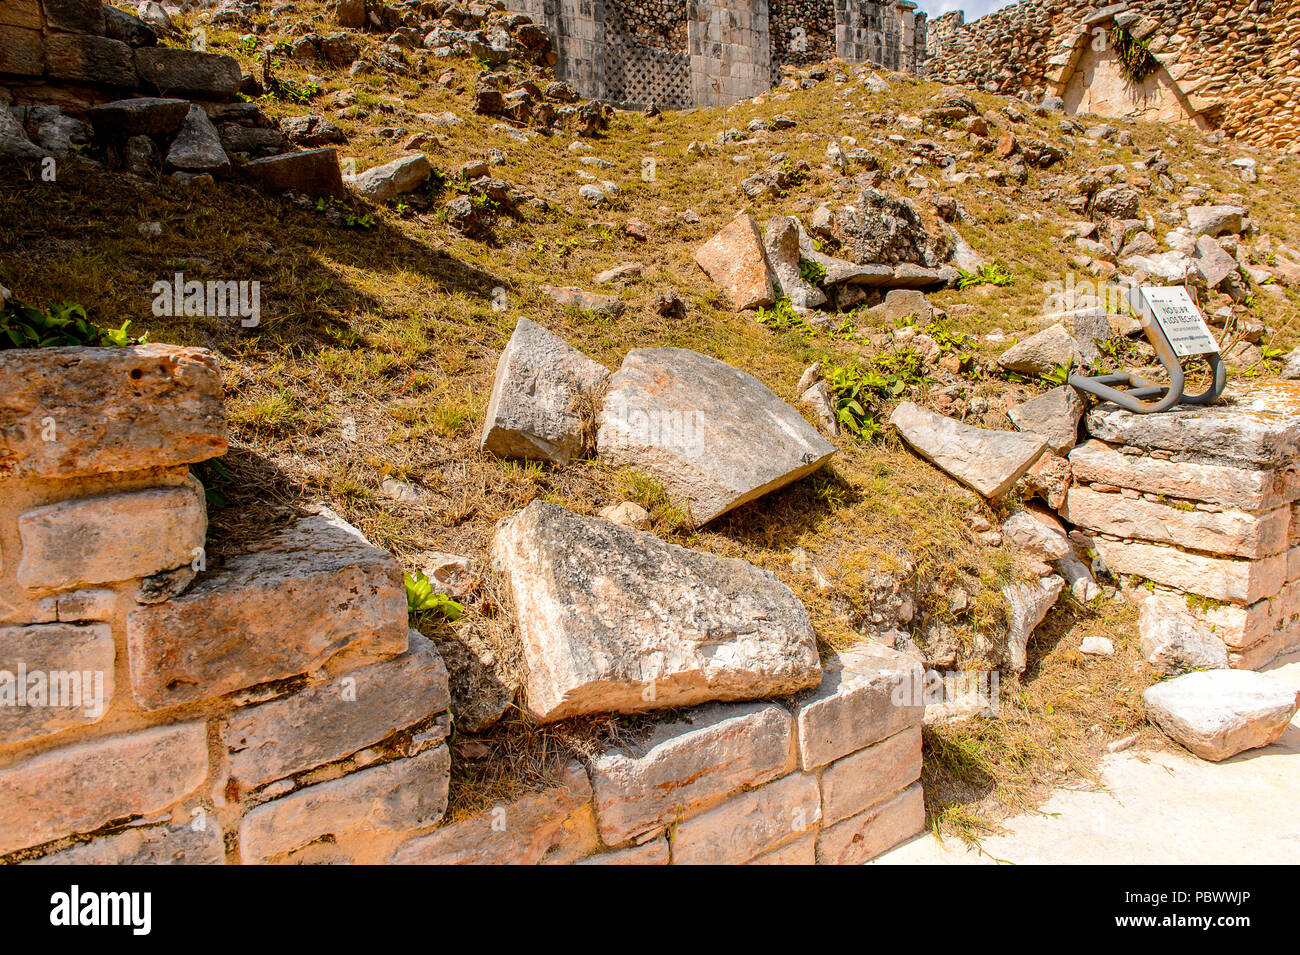 Ruinen von Uxmal, einer alten Maya Stadt der Klassischen Periode. Eine der wichtigsten archäologischen Stätten der Maya Kultur. UNESCO World Heritage si Stockfoto